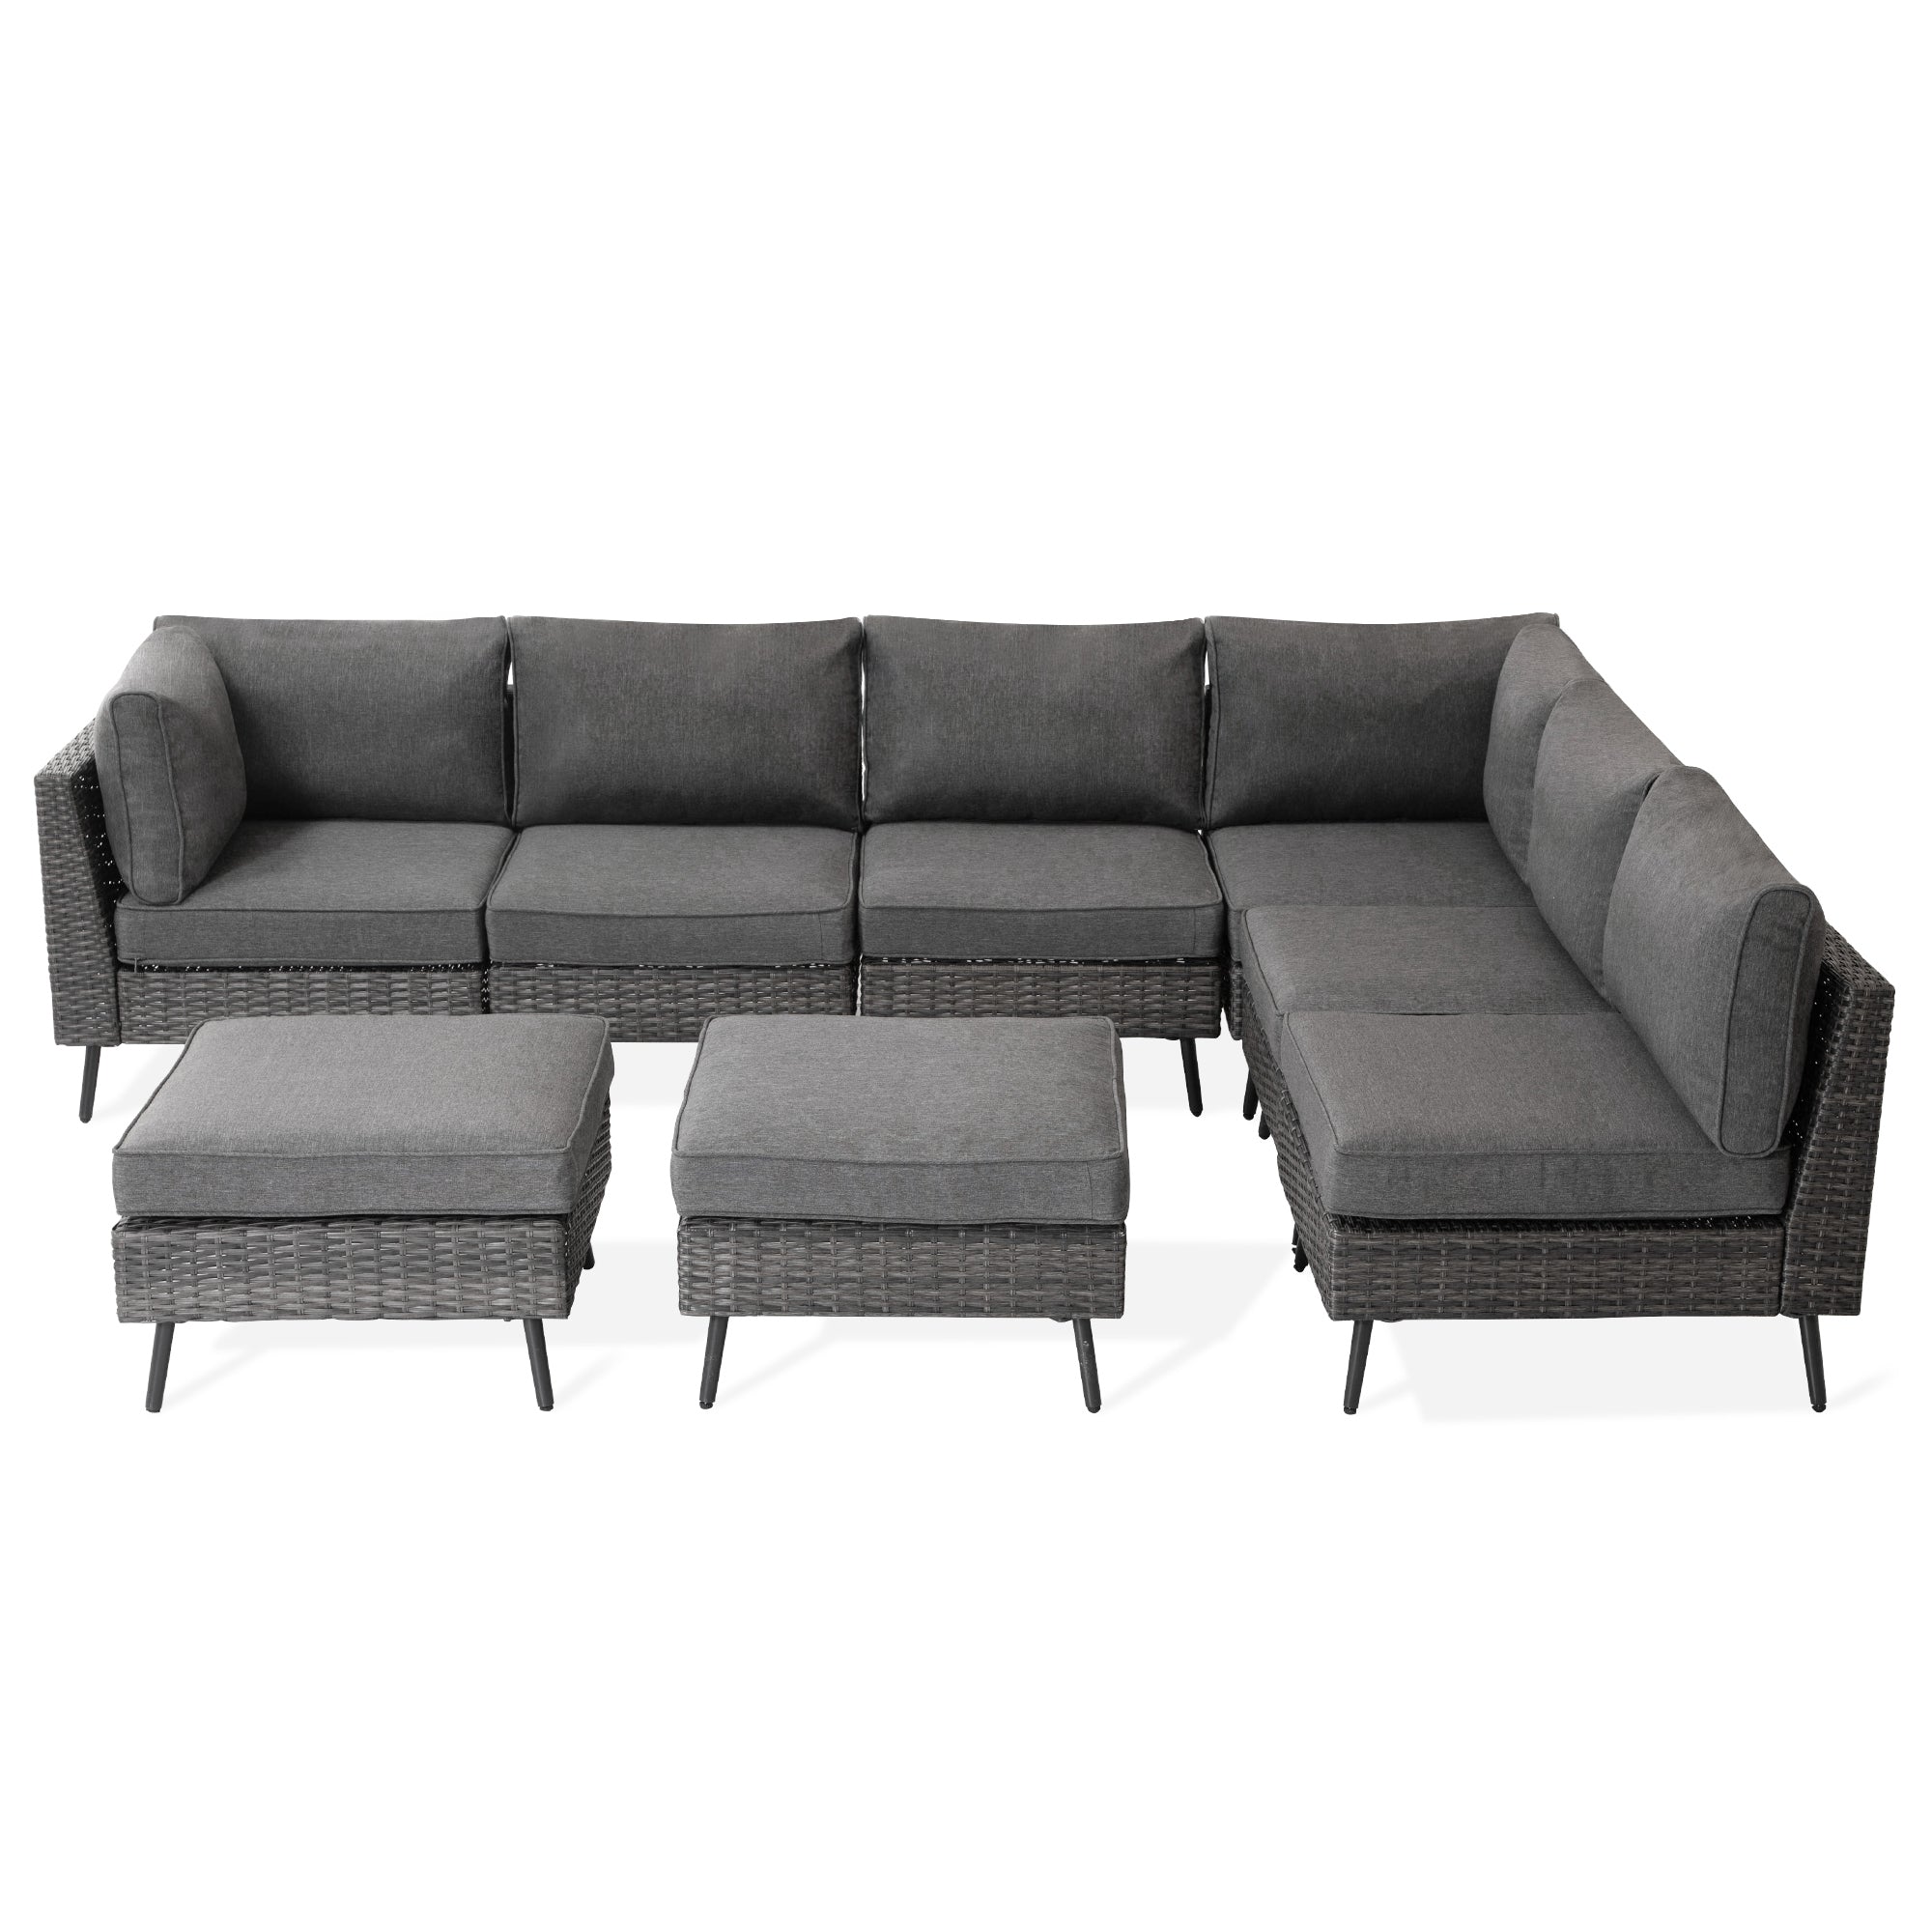 8-piece Wicker Sectional Sofa